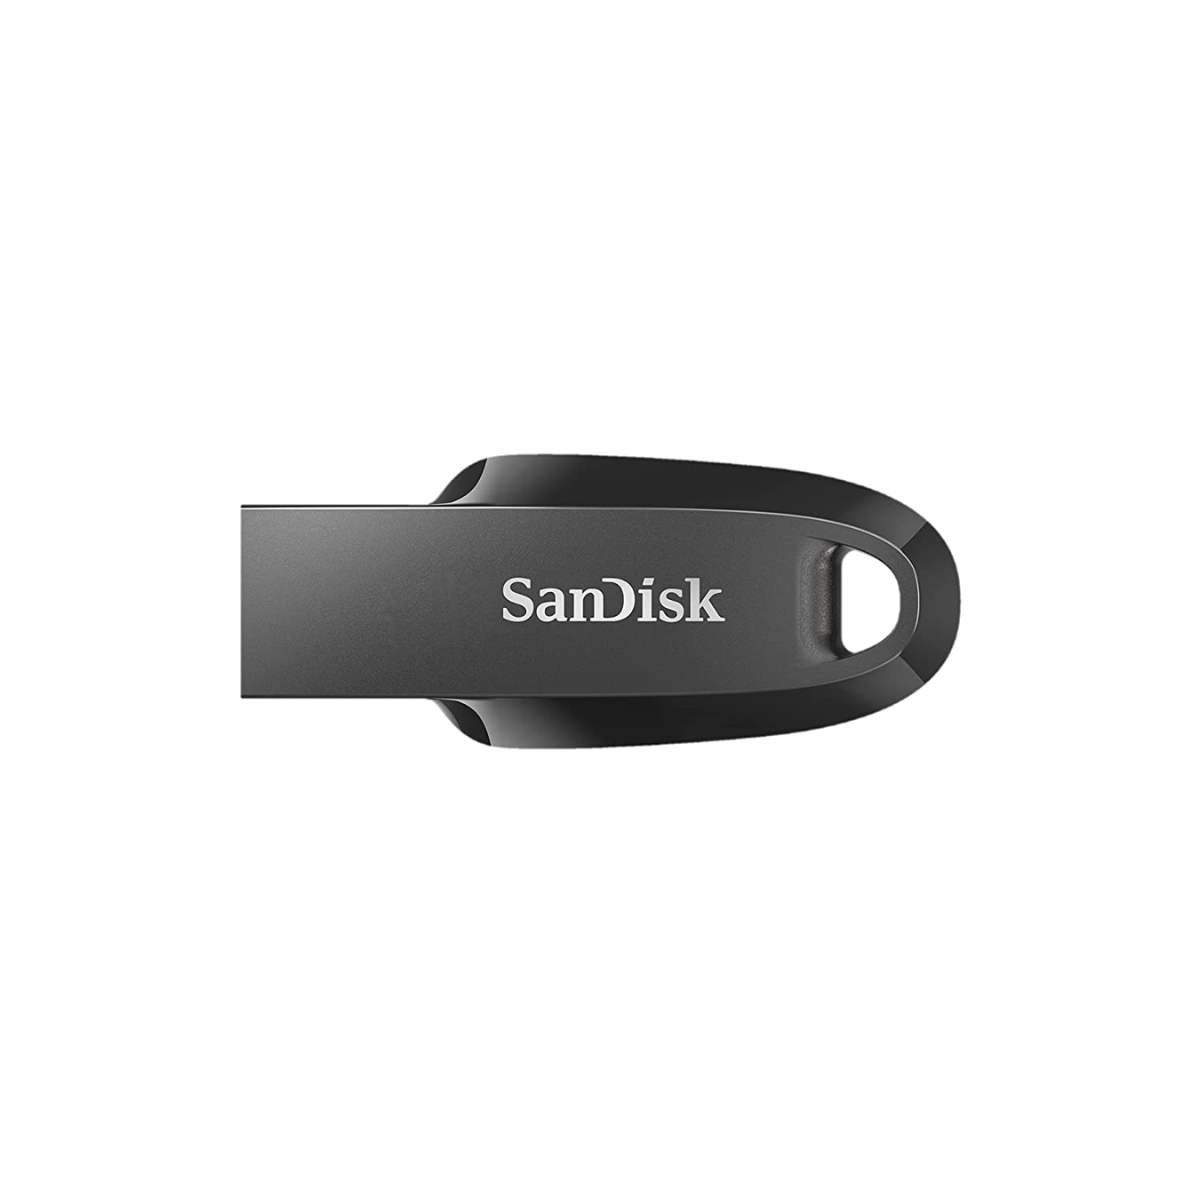 SDCZ71-032G-B35 - Clé USB SANDISK Cruzer Force 32Go USB 